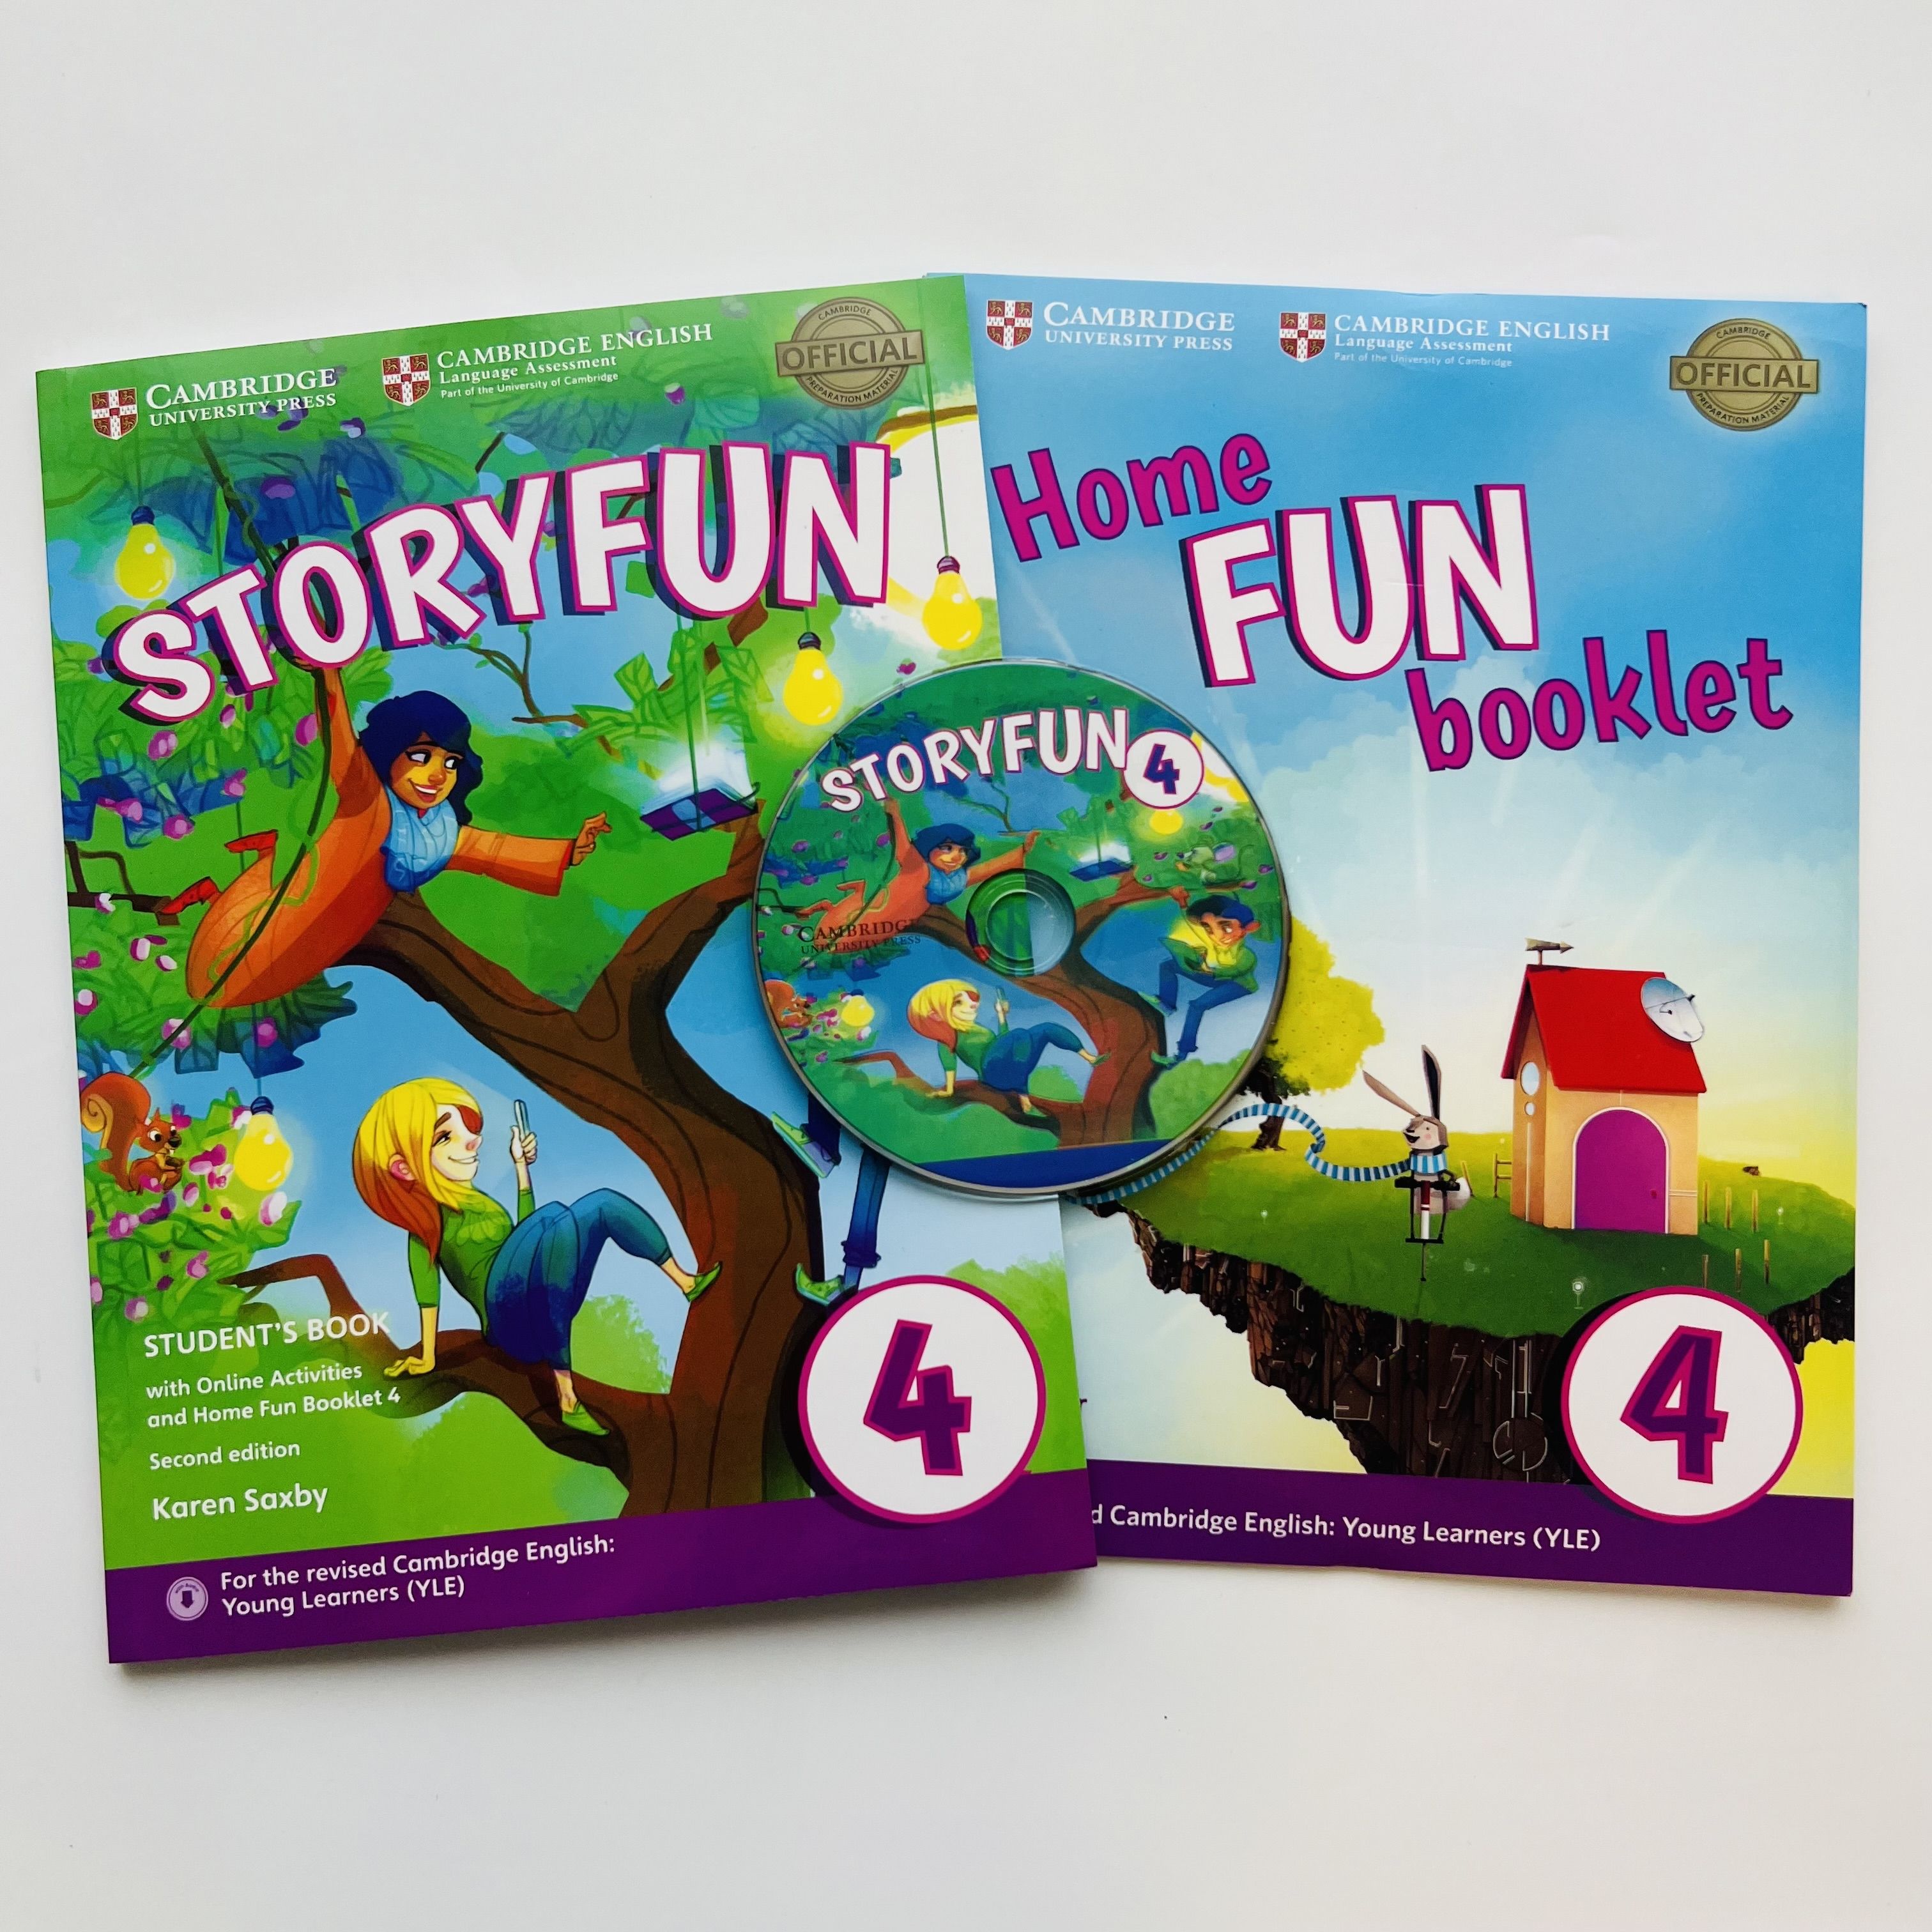 Home fun booklet. Storyfun 3. Storyfun 5. Storyfun. Come and Play storyfun.